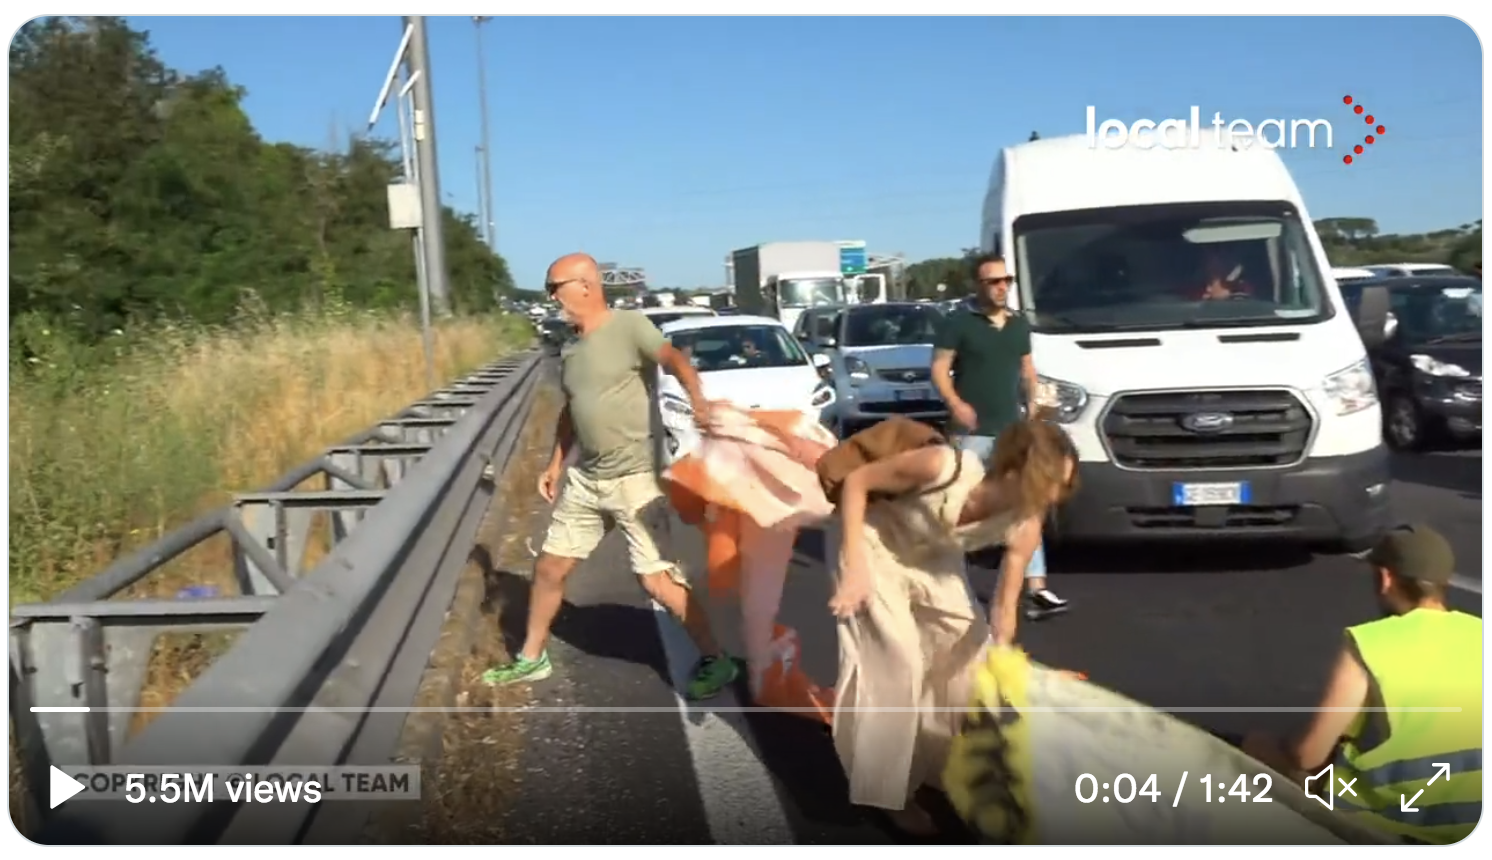 Des automobilistes italiens dégagent les sales gauchistes d’Extinction Rébellion qui tentent de bloquer la circulation automobile (VIDÉOS)